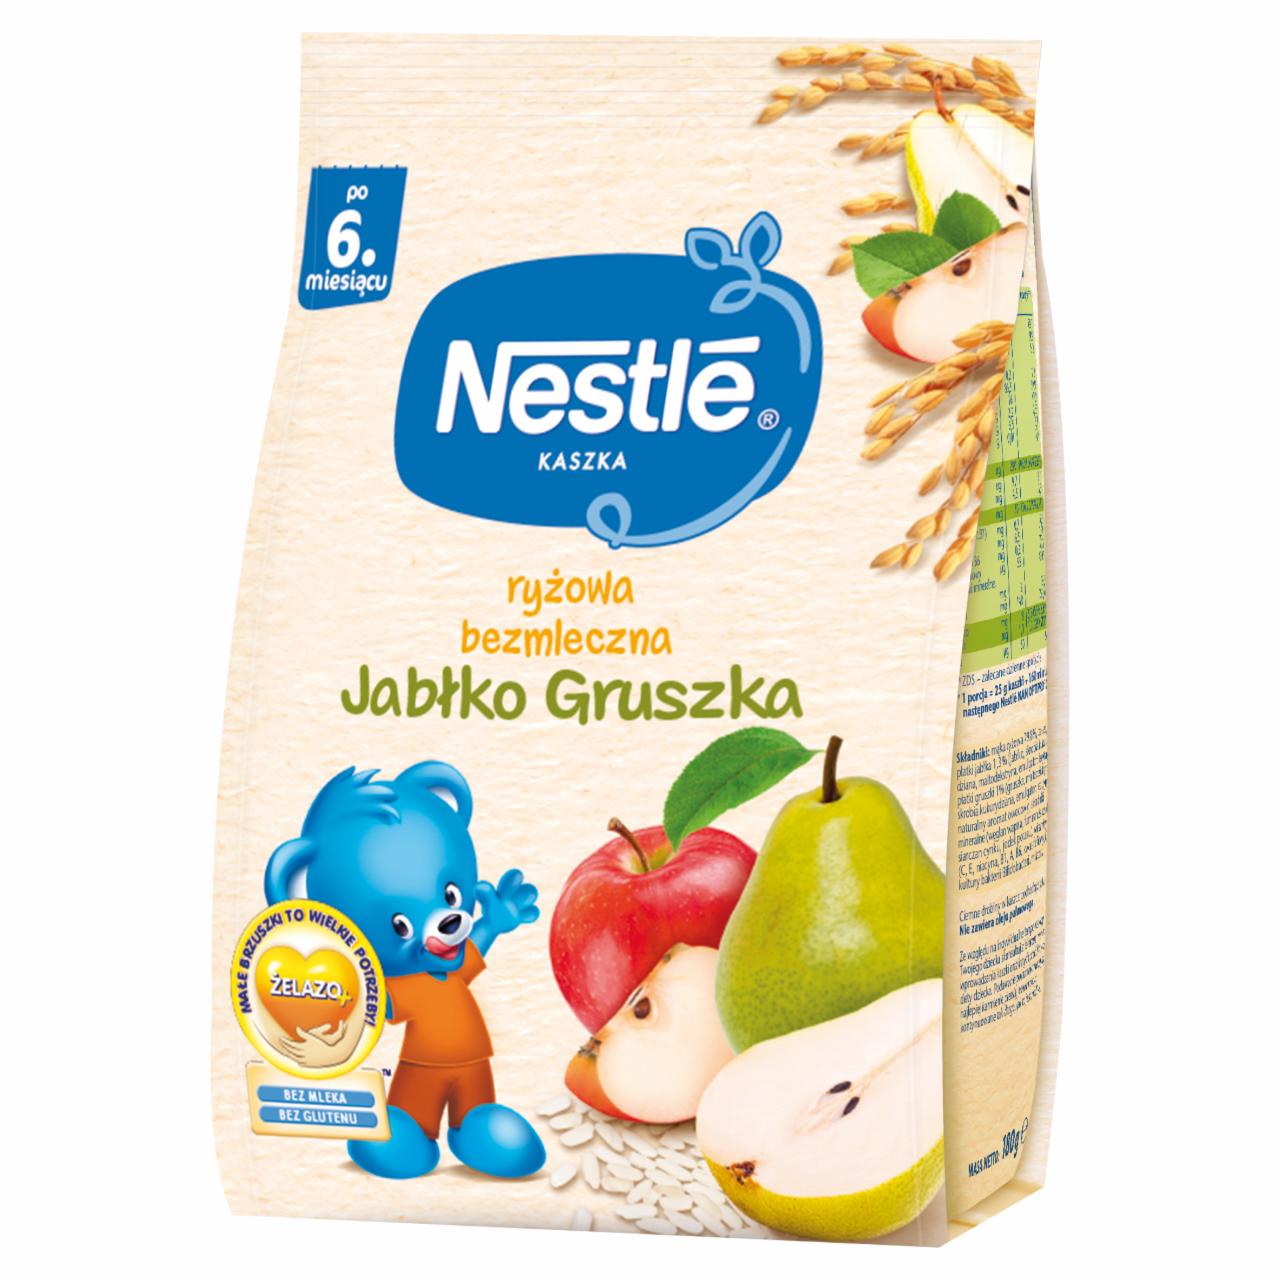 Zdjęcia - Nestlé Kaszka ryżowa bezmleczna jabłko gruszka dla niemowląt po 6. miesiącu 180 g